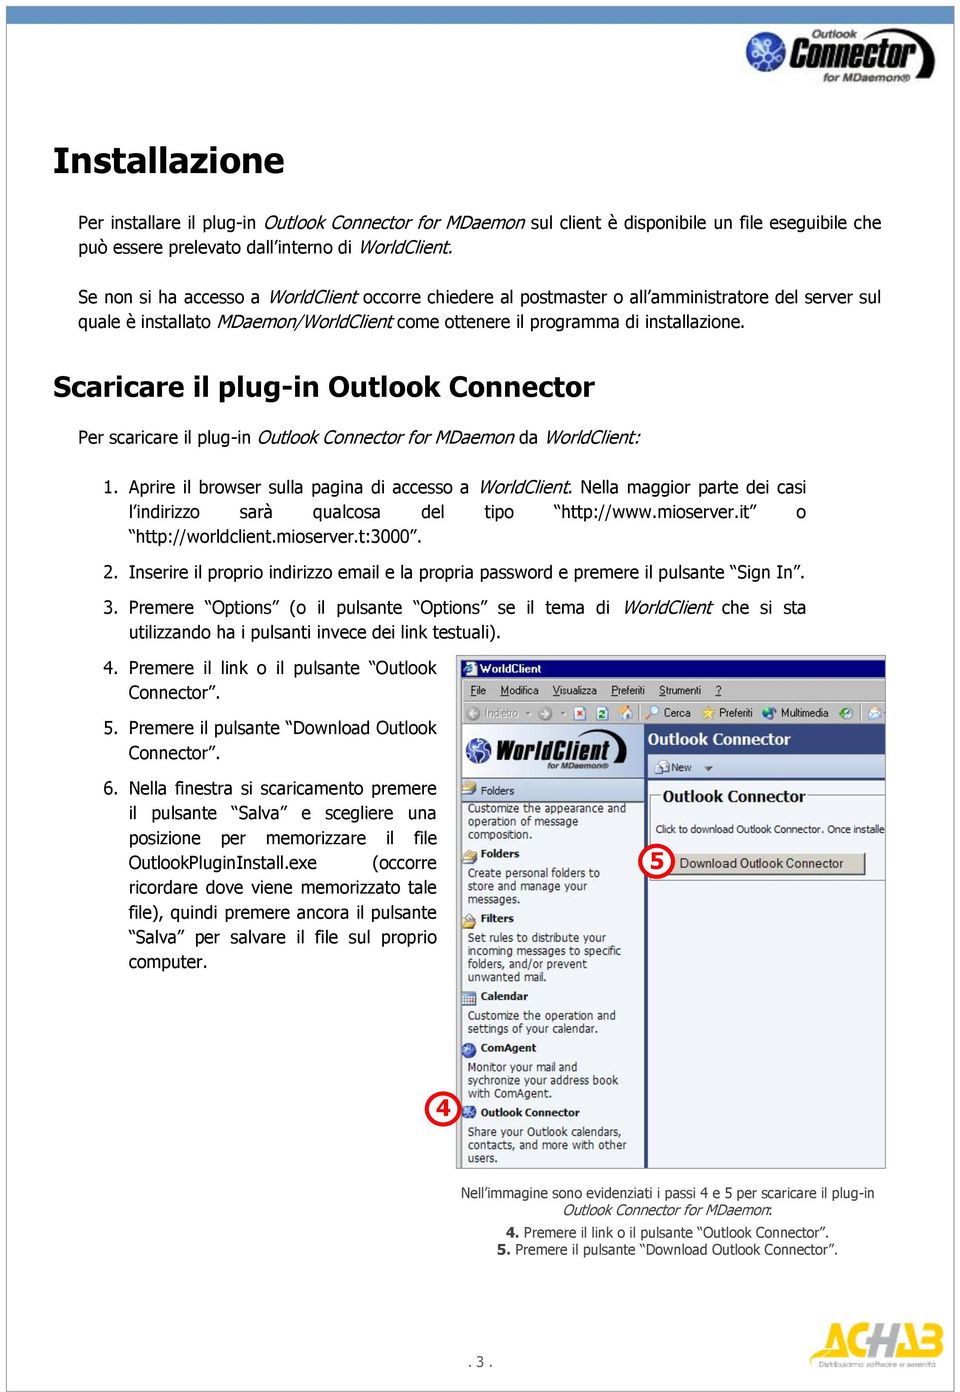 Scaricare il plug-in Outlook Connector Per scaricare il plug-in Outlook Connector for MDaemon da WorldClient: 1. Aprire il browser sulla pagina di accesso a WorldClient.